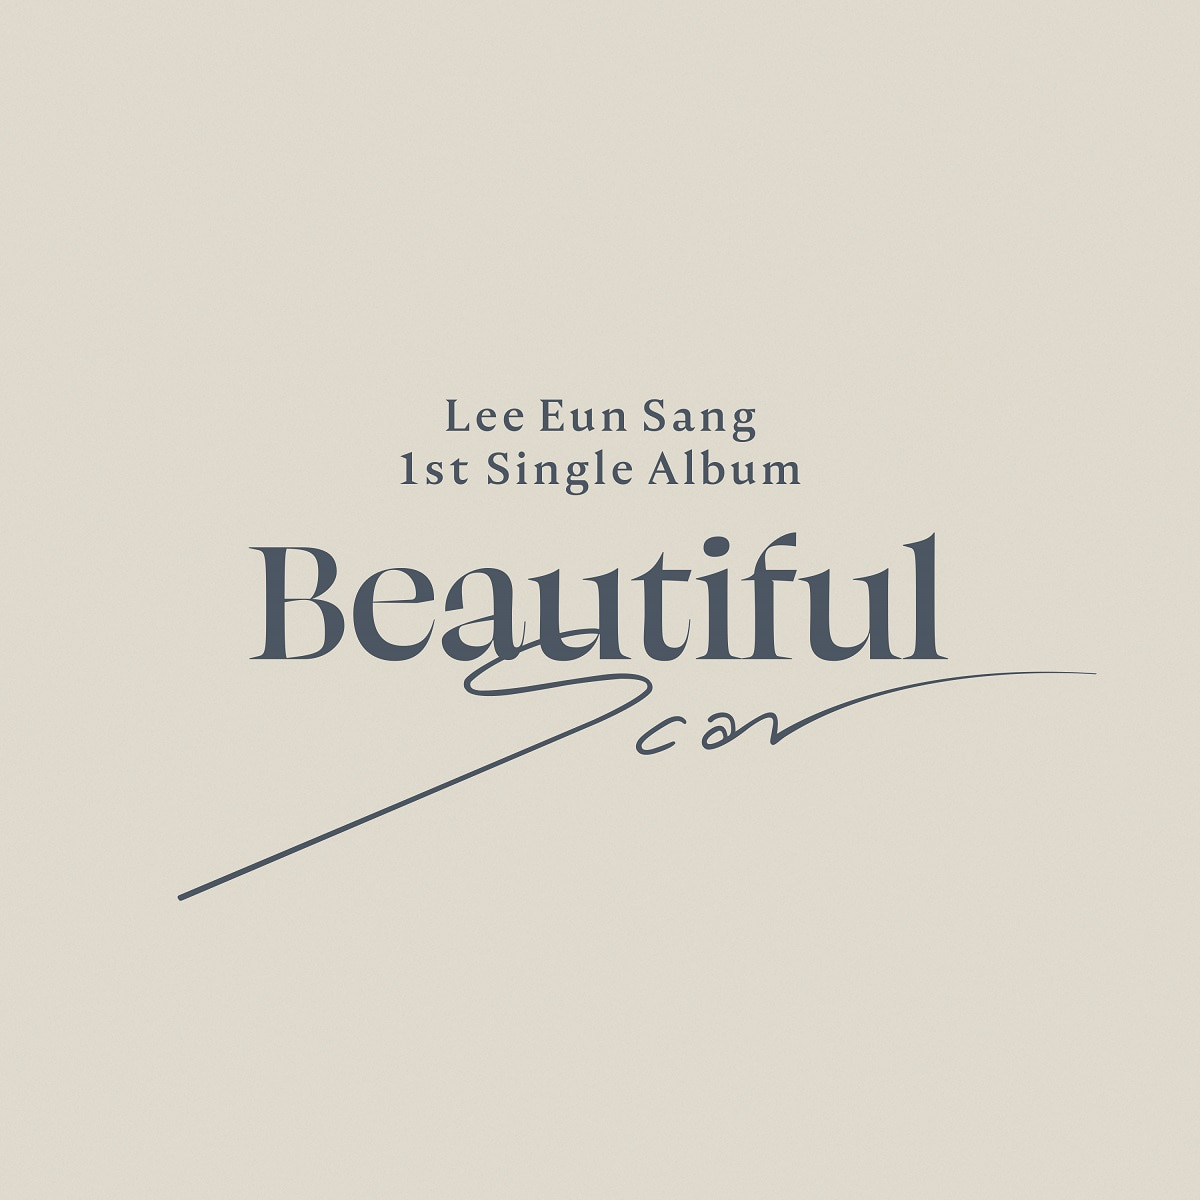 이은상 - 미니앨범 1집 [Beautiful Scar] (Beautiful 버전)케이팝스토어(kpop store)